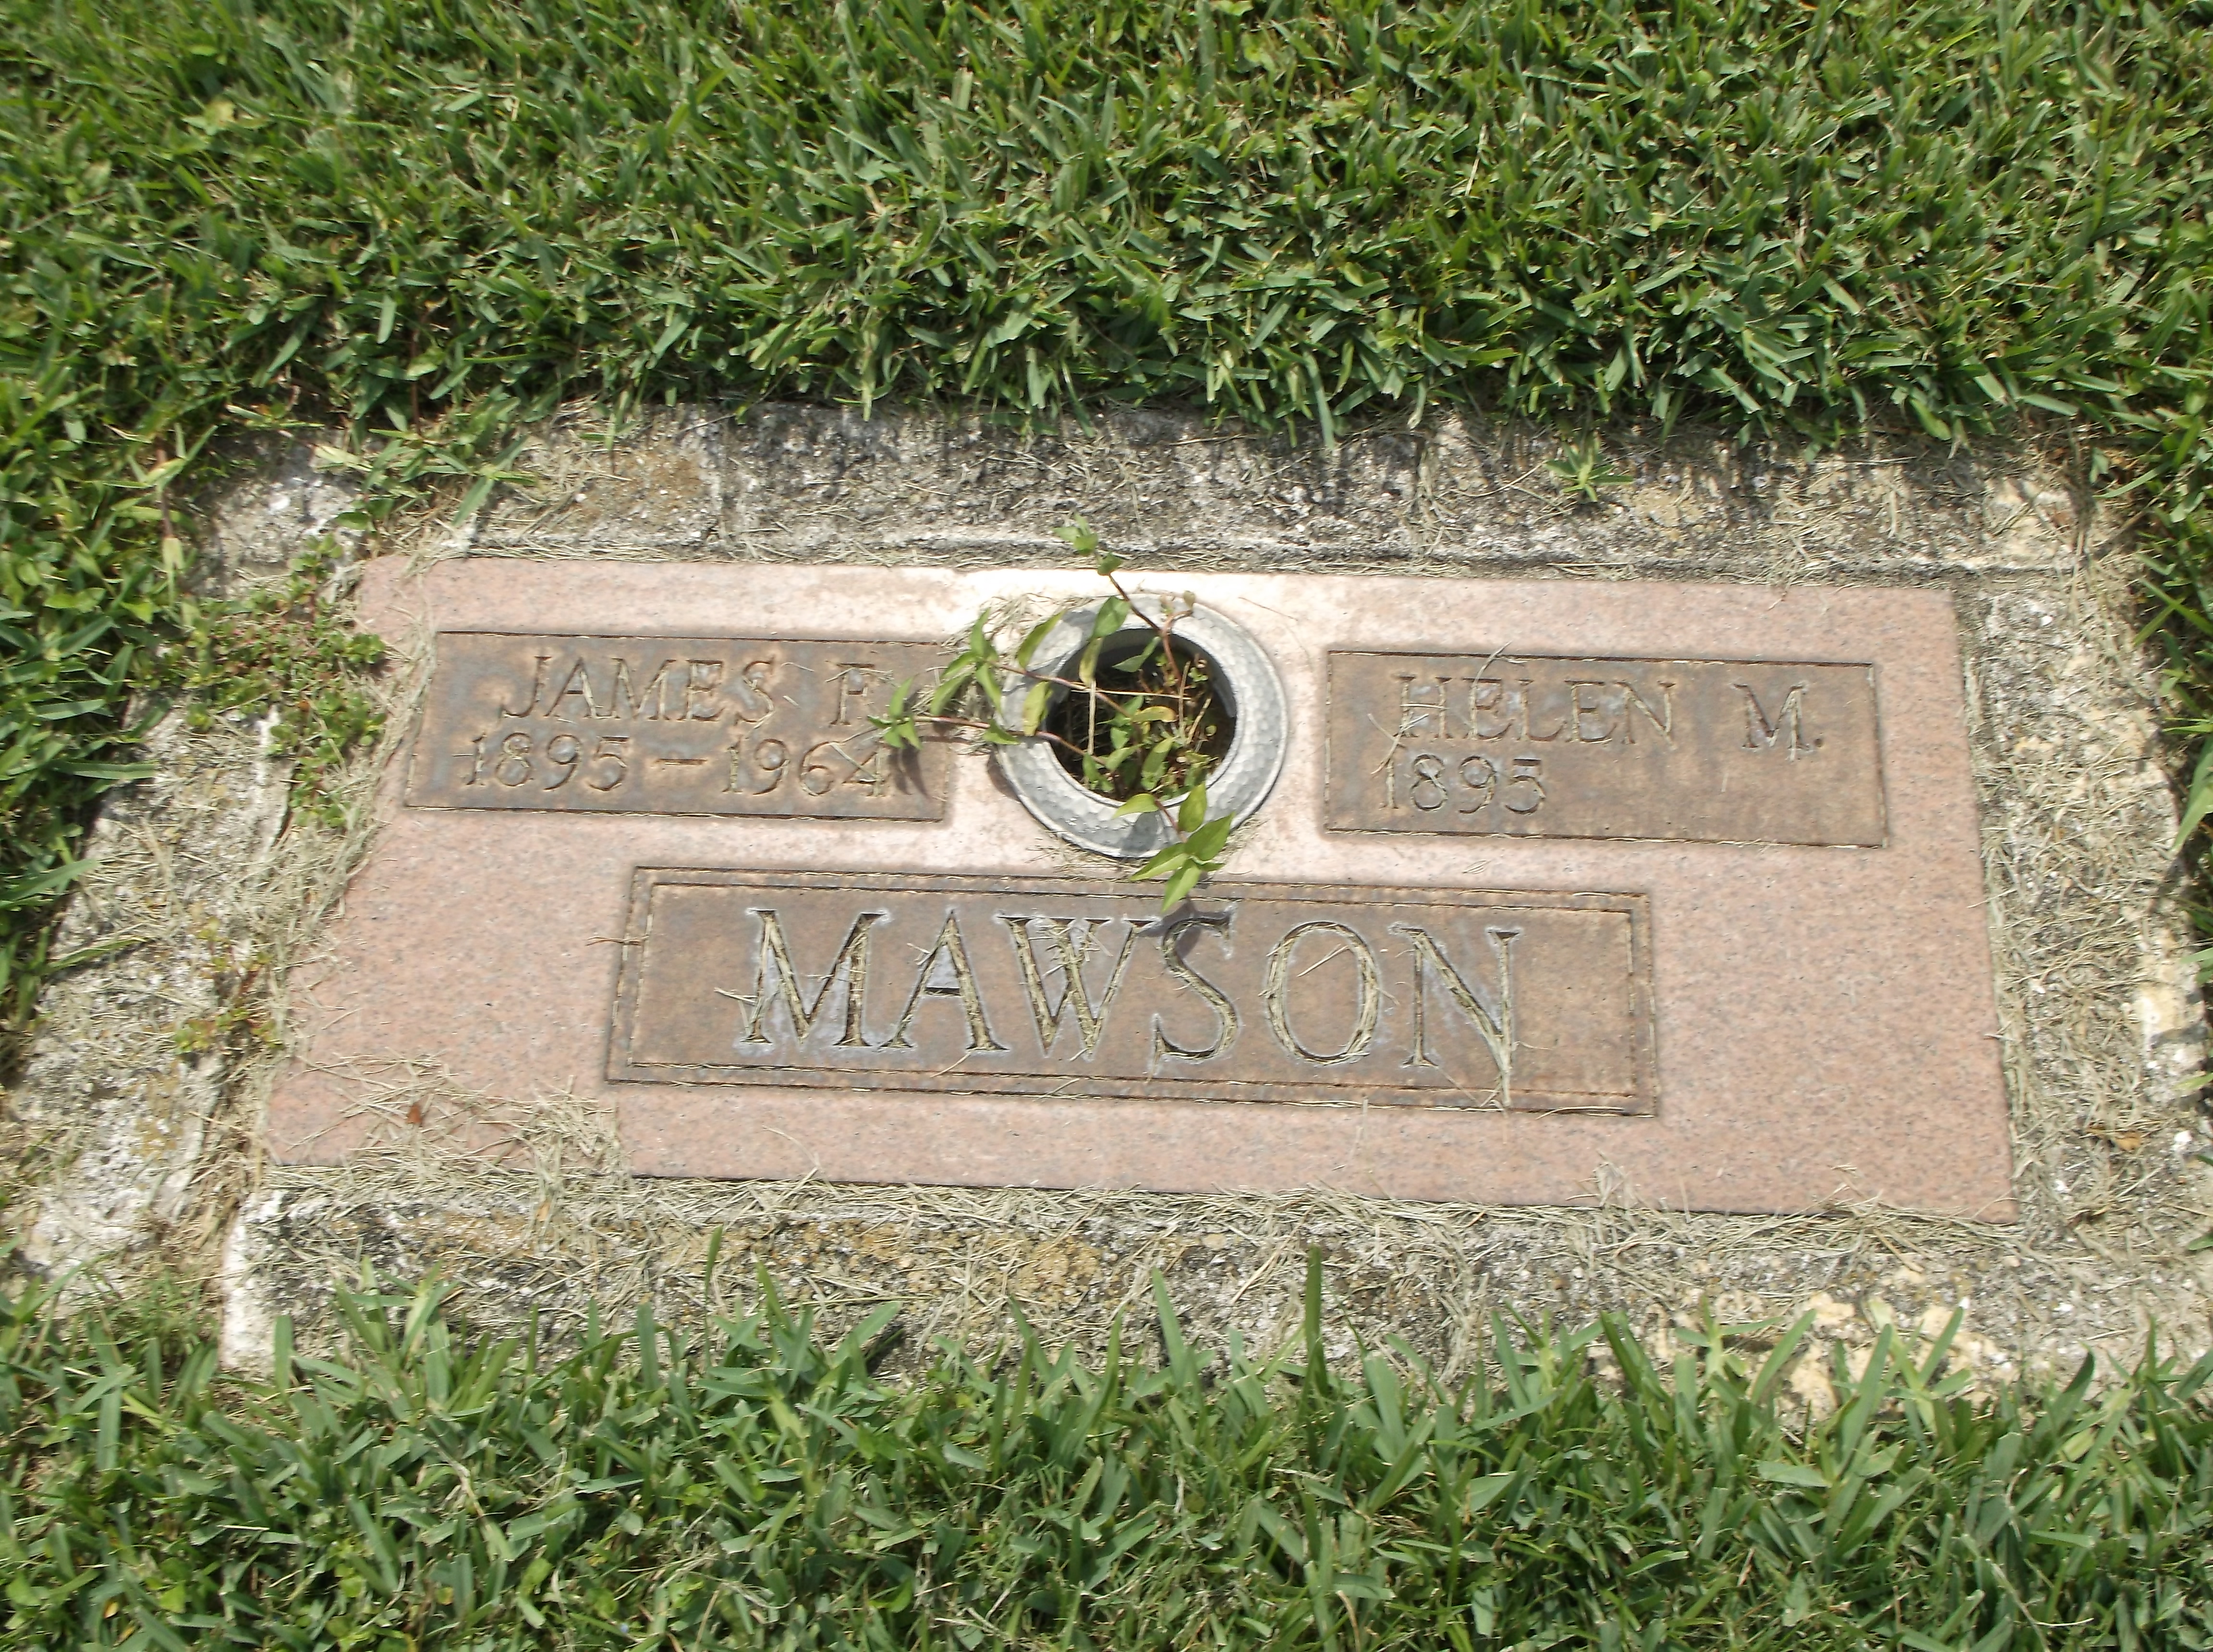 Helen M Mawson